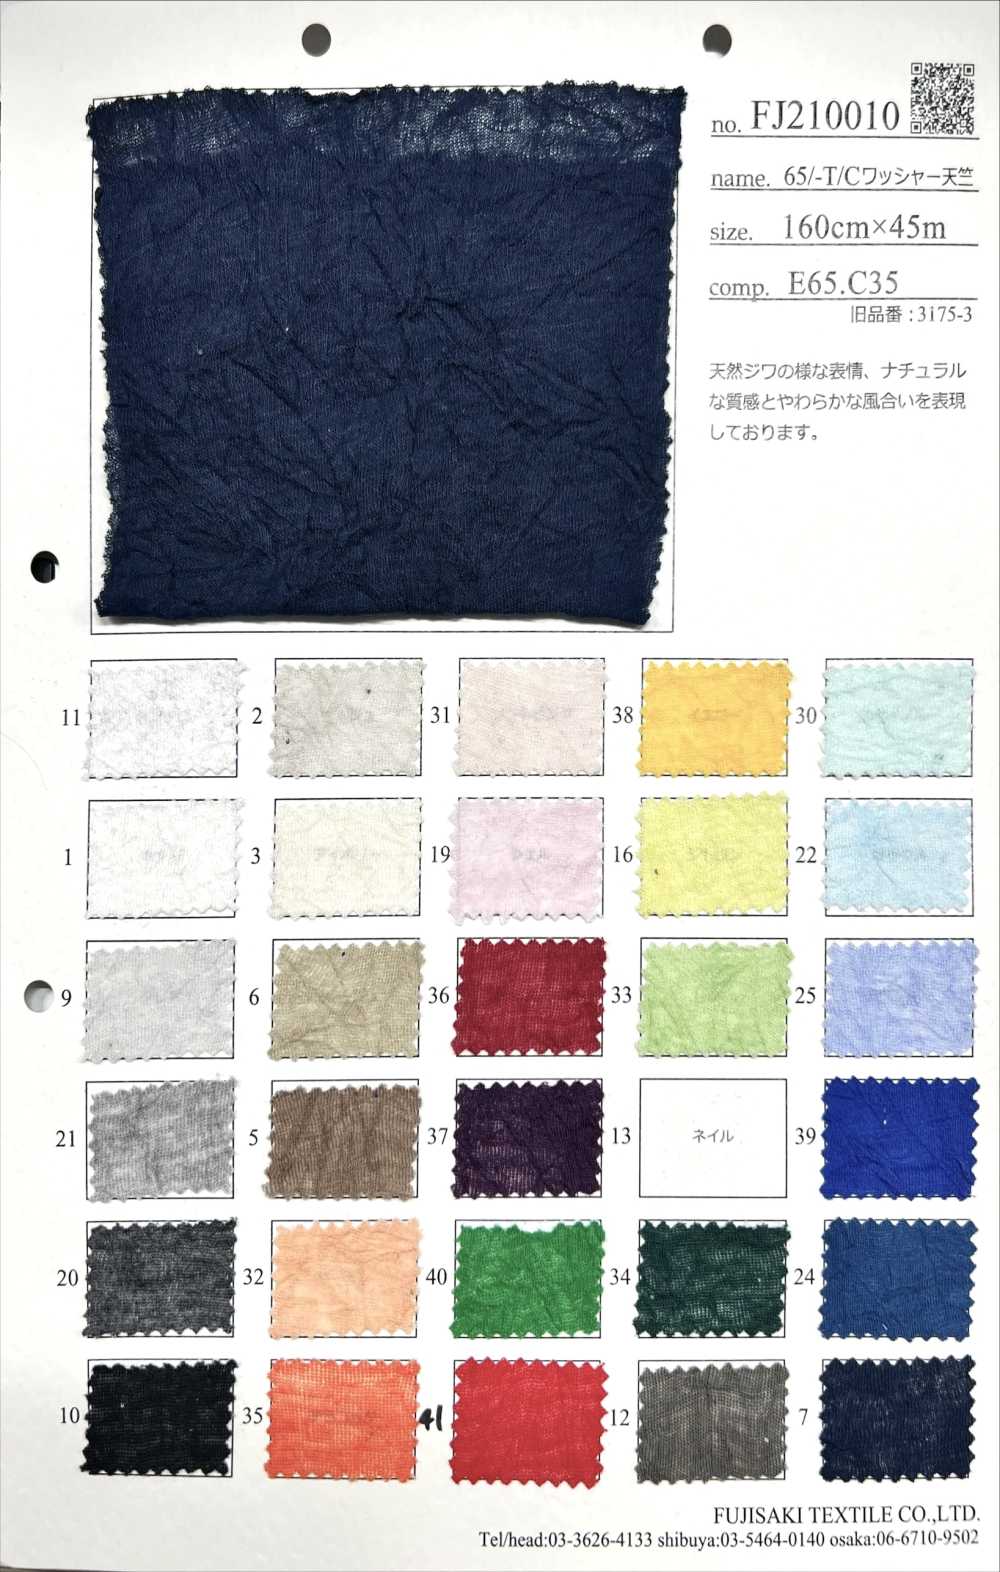 FJ210010 Jersey Lavorato A Rondella 65/-T/C[Tessile / Tessuto] Fujisaki Textile